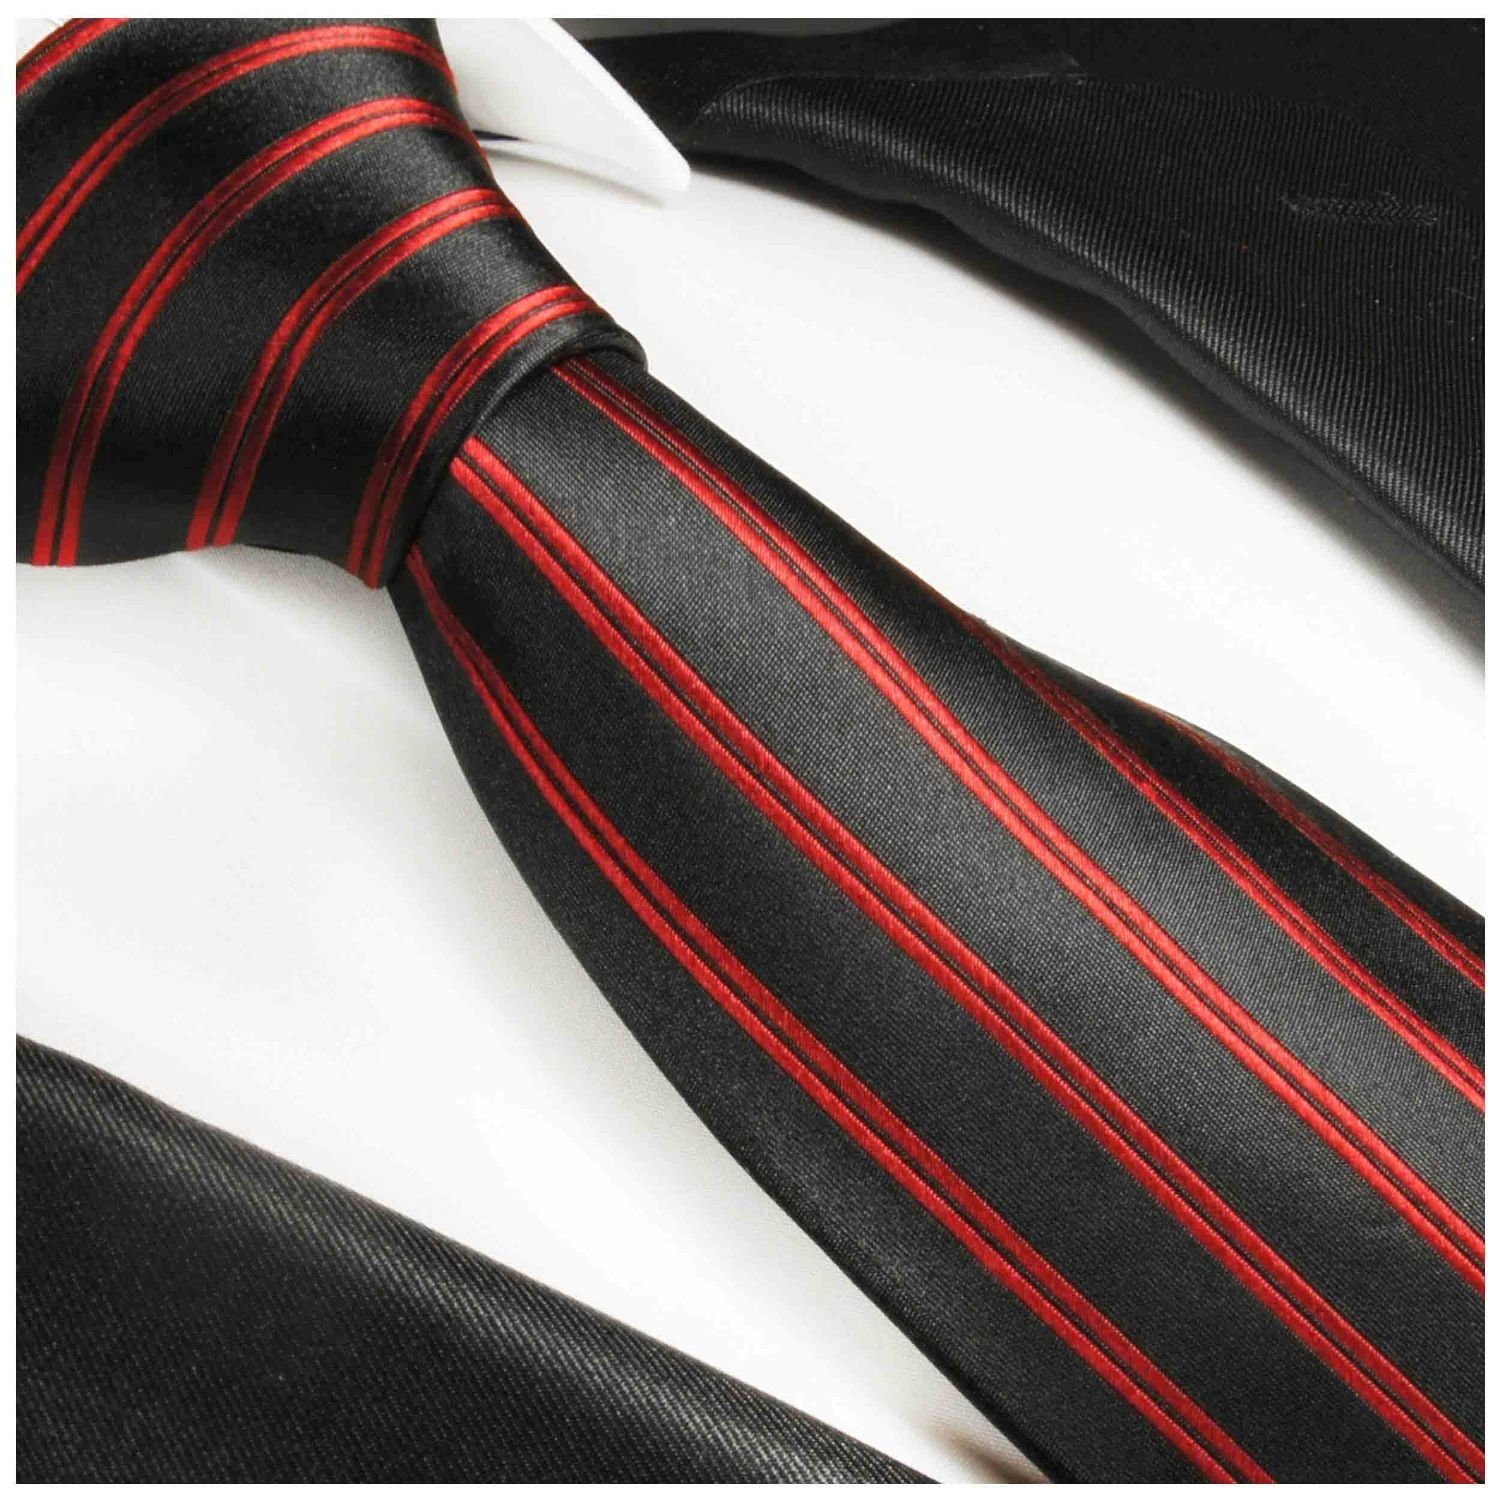 Malone Herren Seide Paul Moderne gestreift Krawatte (6cm), schwarz rot 988 Schmal 100% Seidenkrawatte